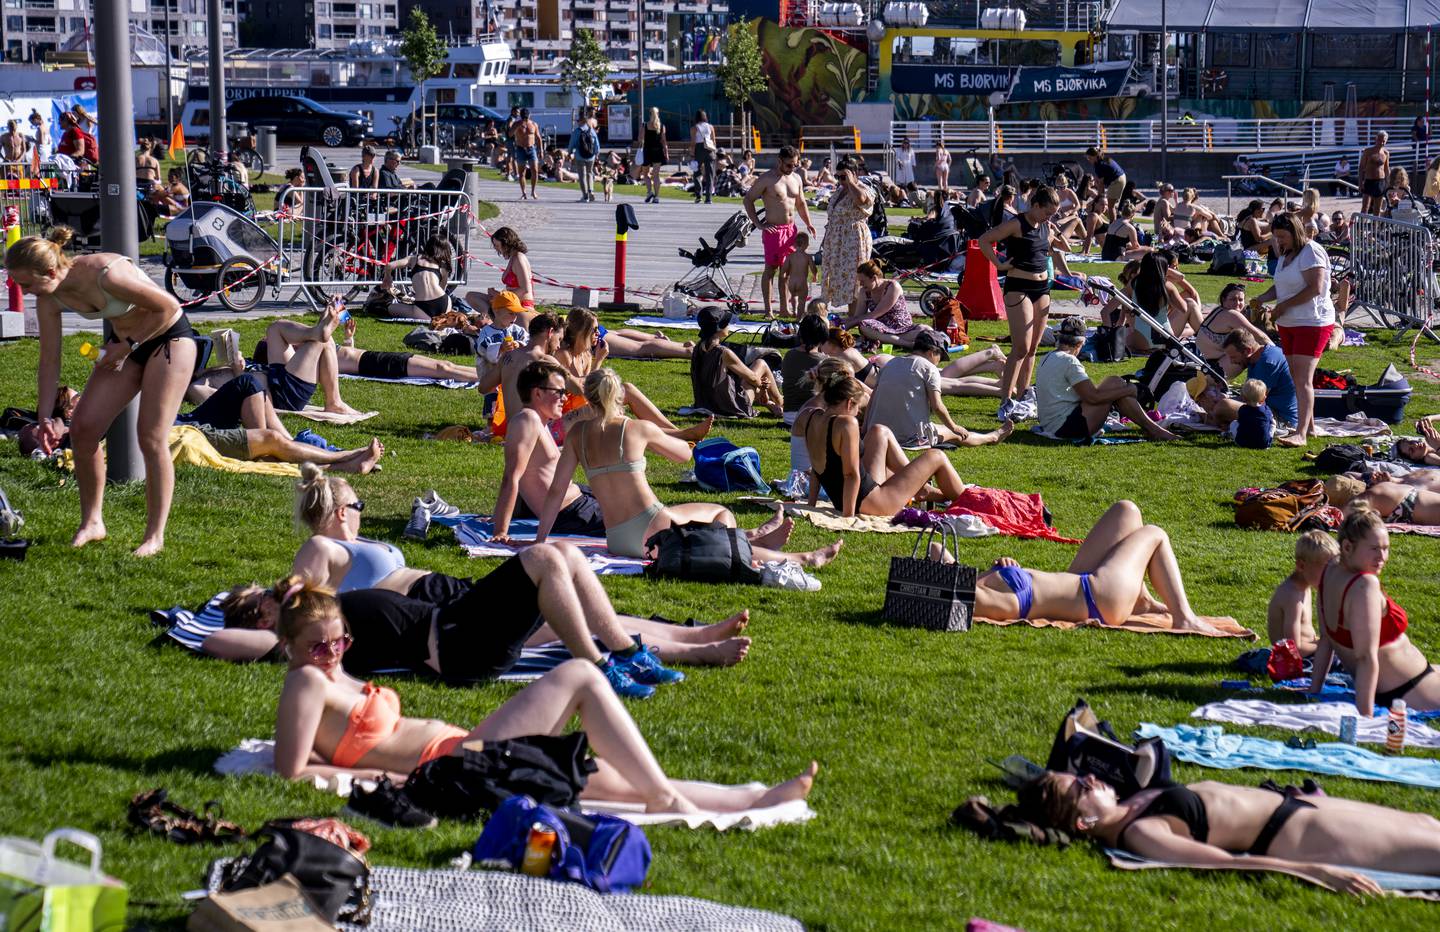 Oslo 20220620. 
Folk koser seg i solen under en nydelig sommervær på Operastranda i Oslo.
Foto: Javad Parsa / NTB